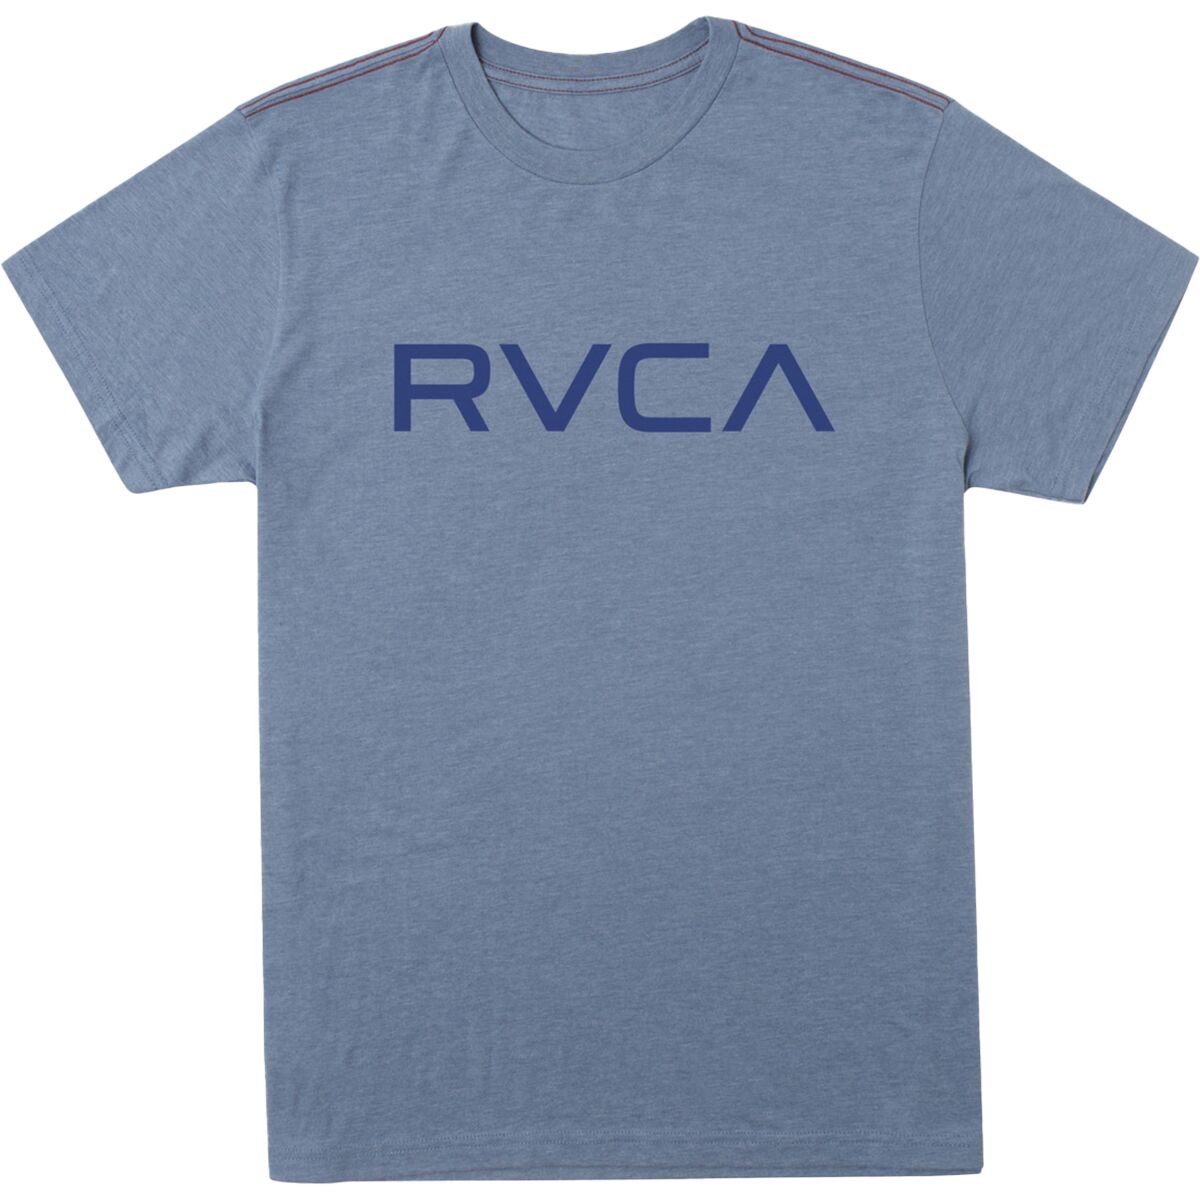 RVCA Big RVCA T-Shirt - Men's